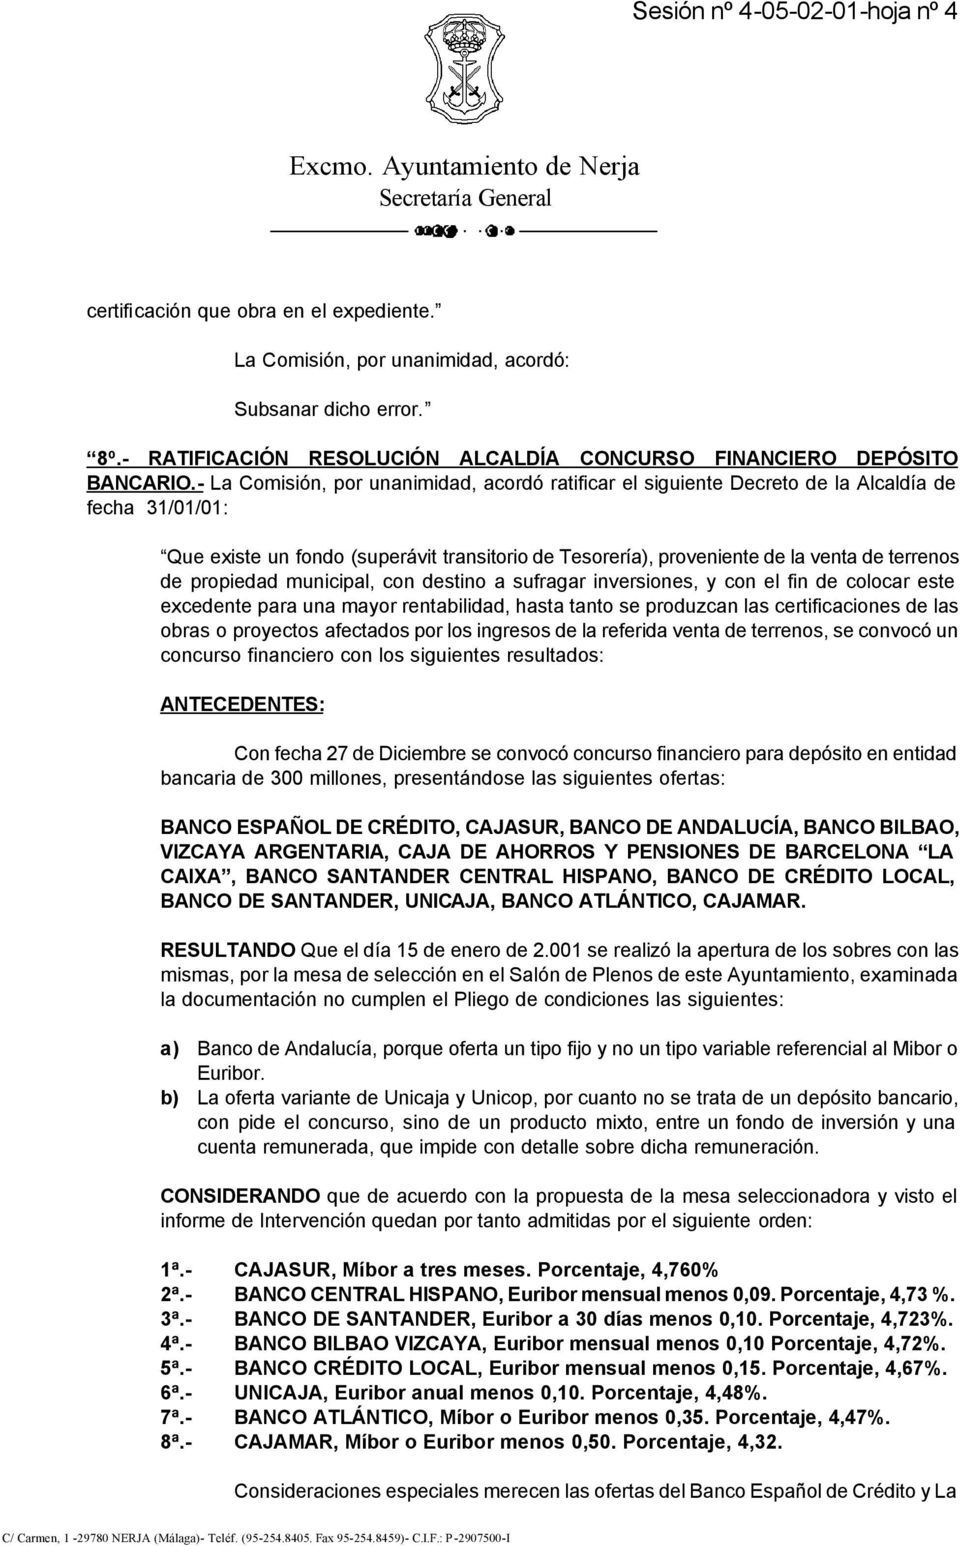 - La Comisión, por unanimidad, acordó ratificar el siguiente Decreto de la Alcaldía de fecha 31/01/01: Que existe un fondo (superávit transitorio de Tesorería), proveniente de la venta de terrenos de